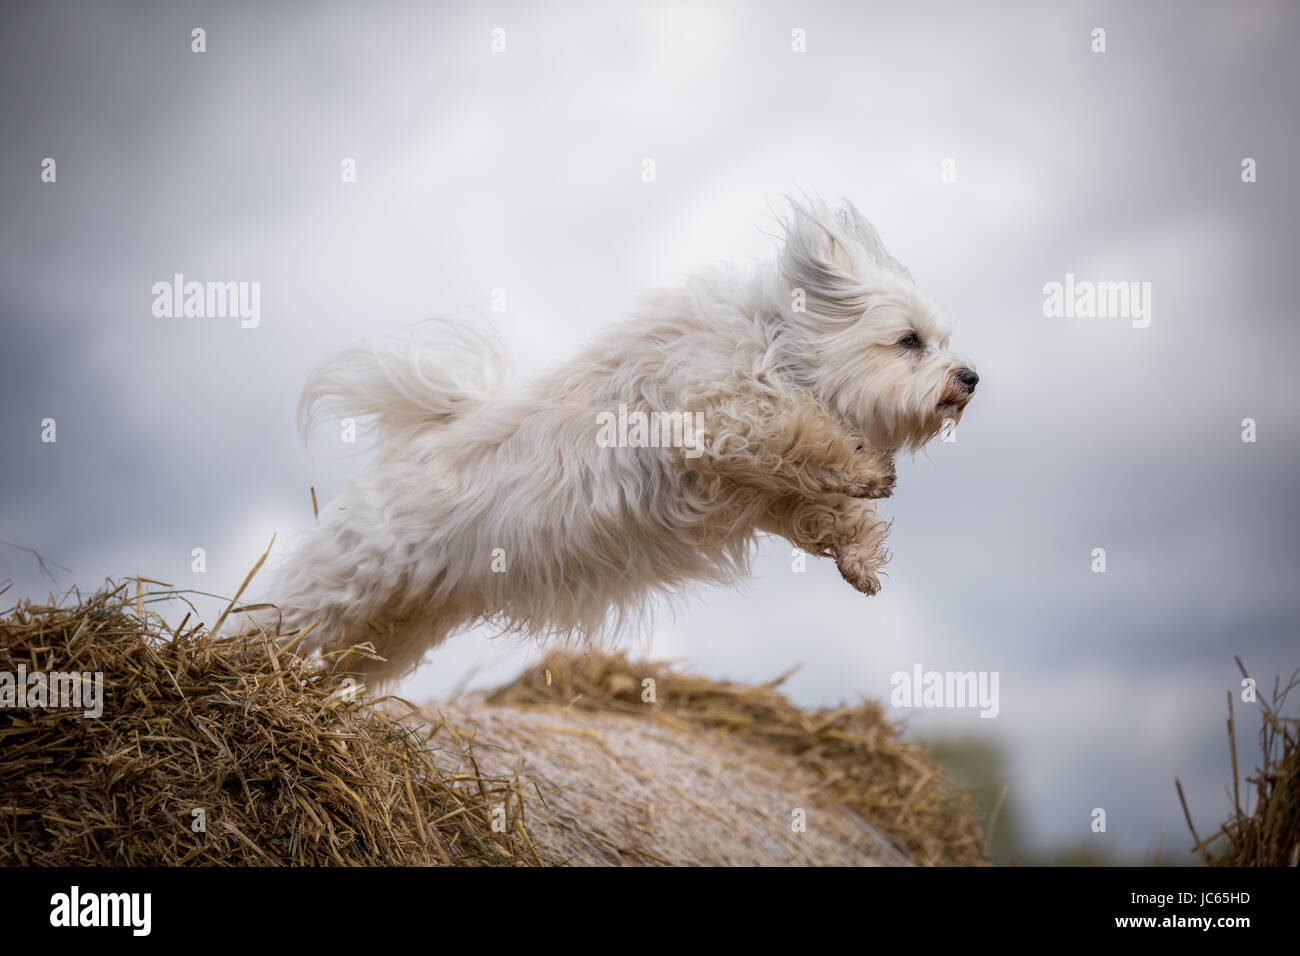 Ein kleiner weißer Hund kurz nach dem Absprung von einem Strohballen. Stock Photo